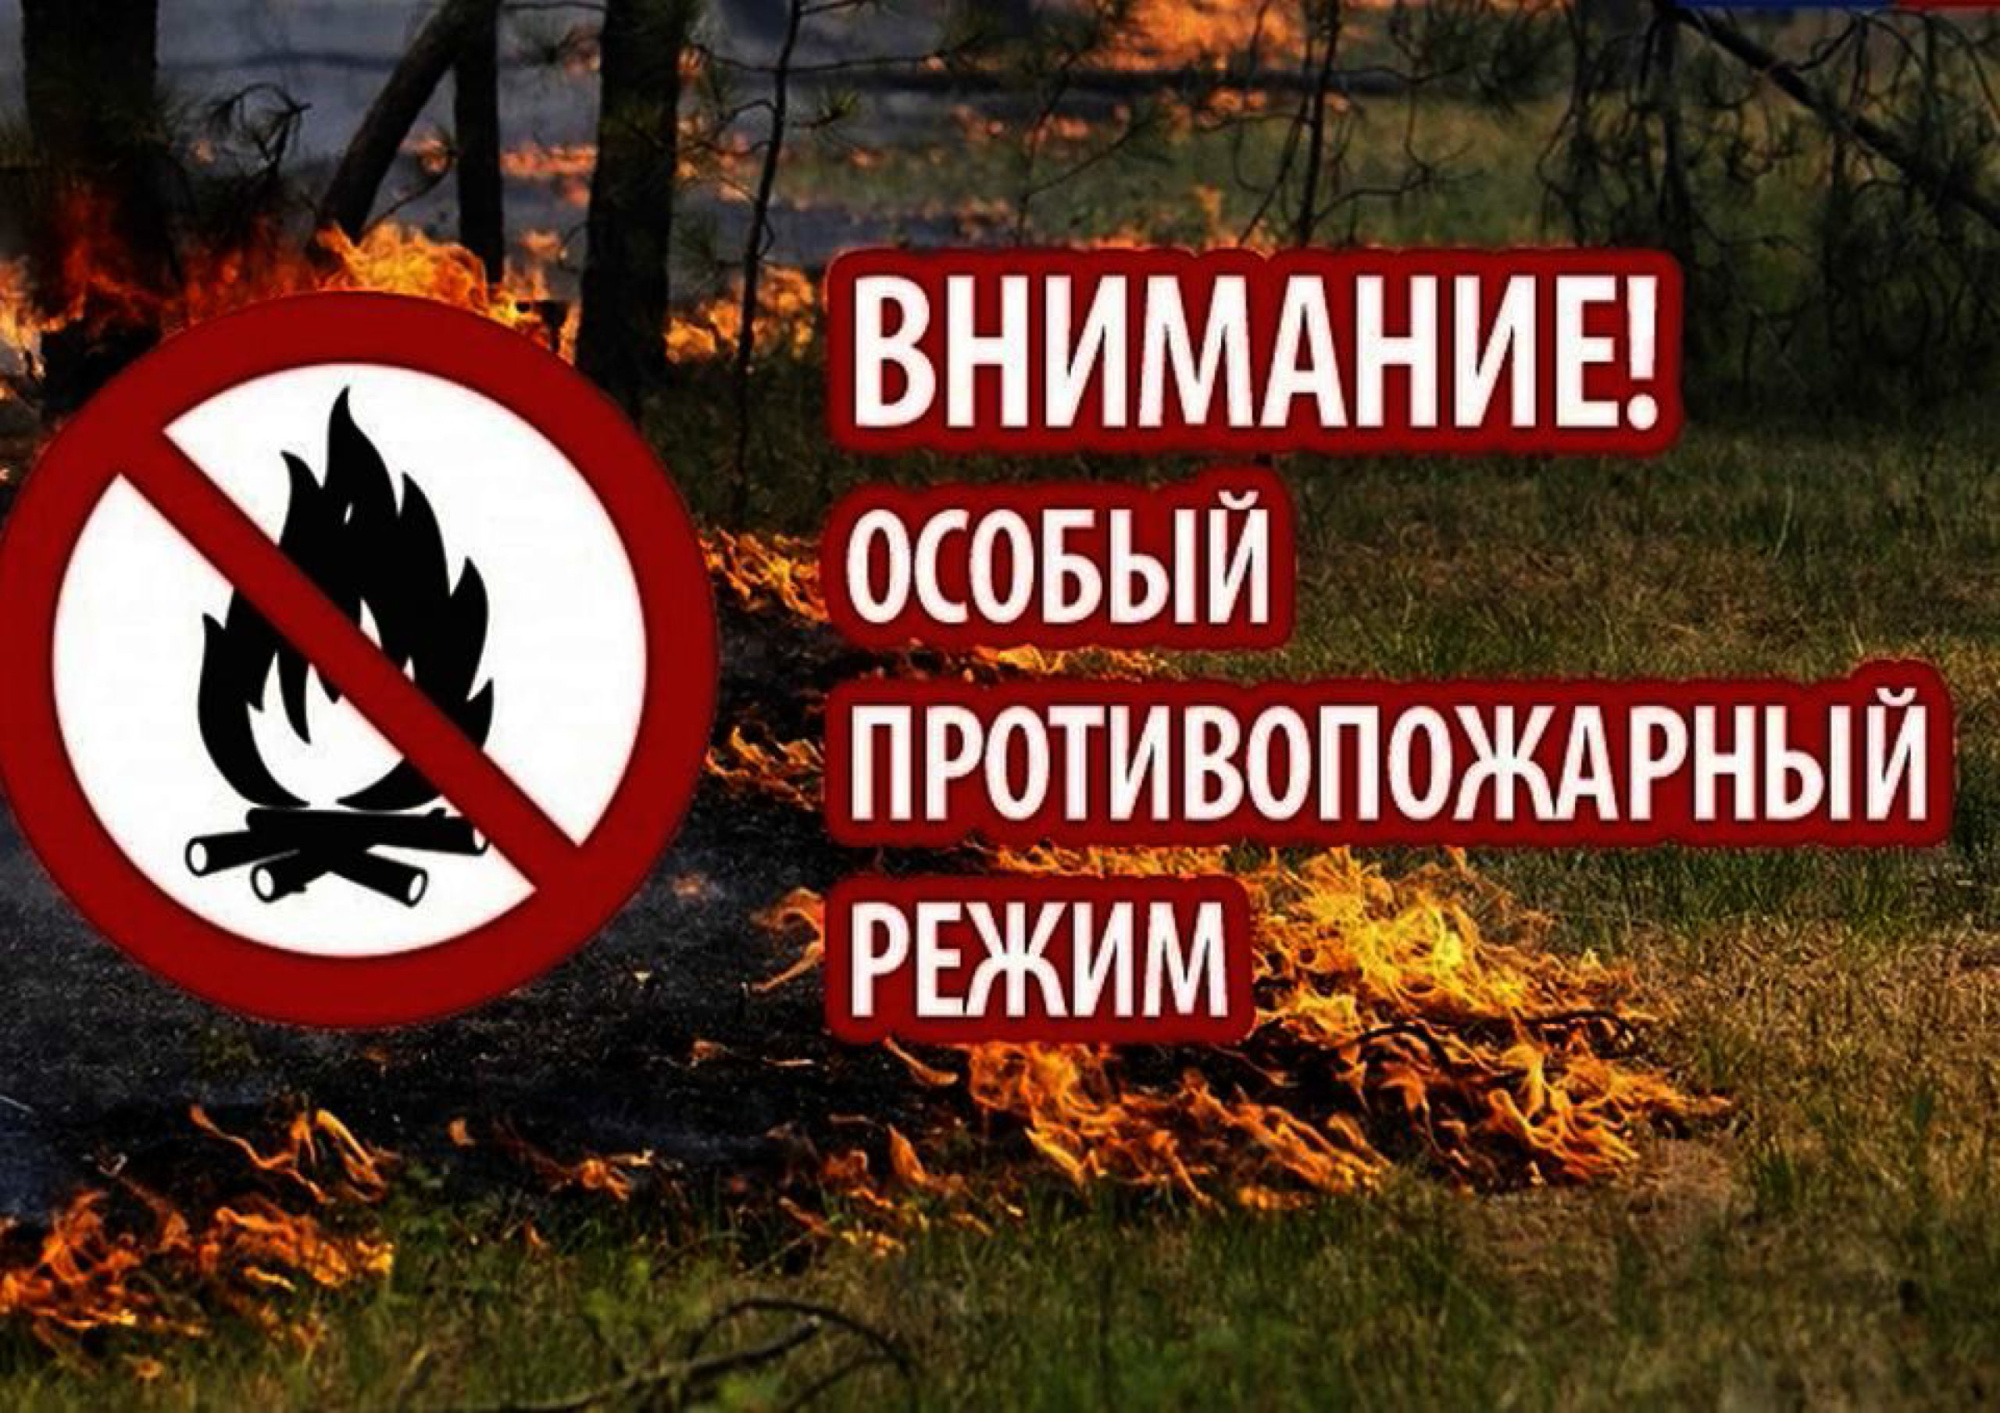 Установление на территории Новгородской области особого противопожарного режима.